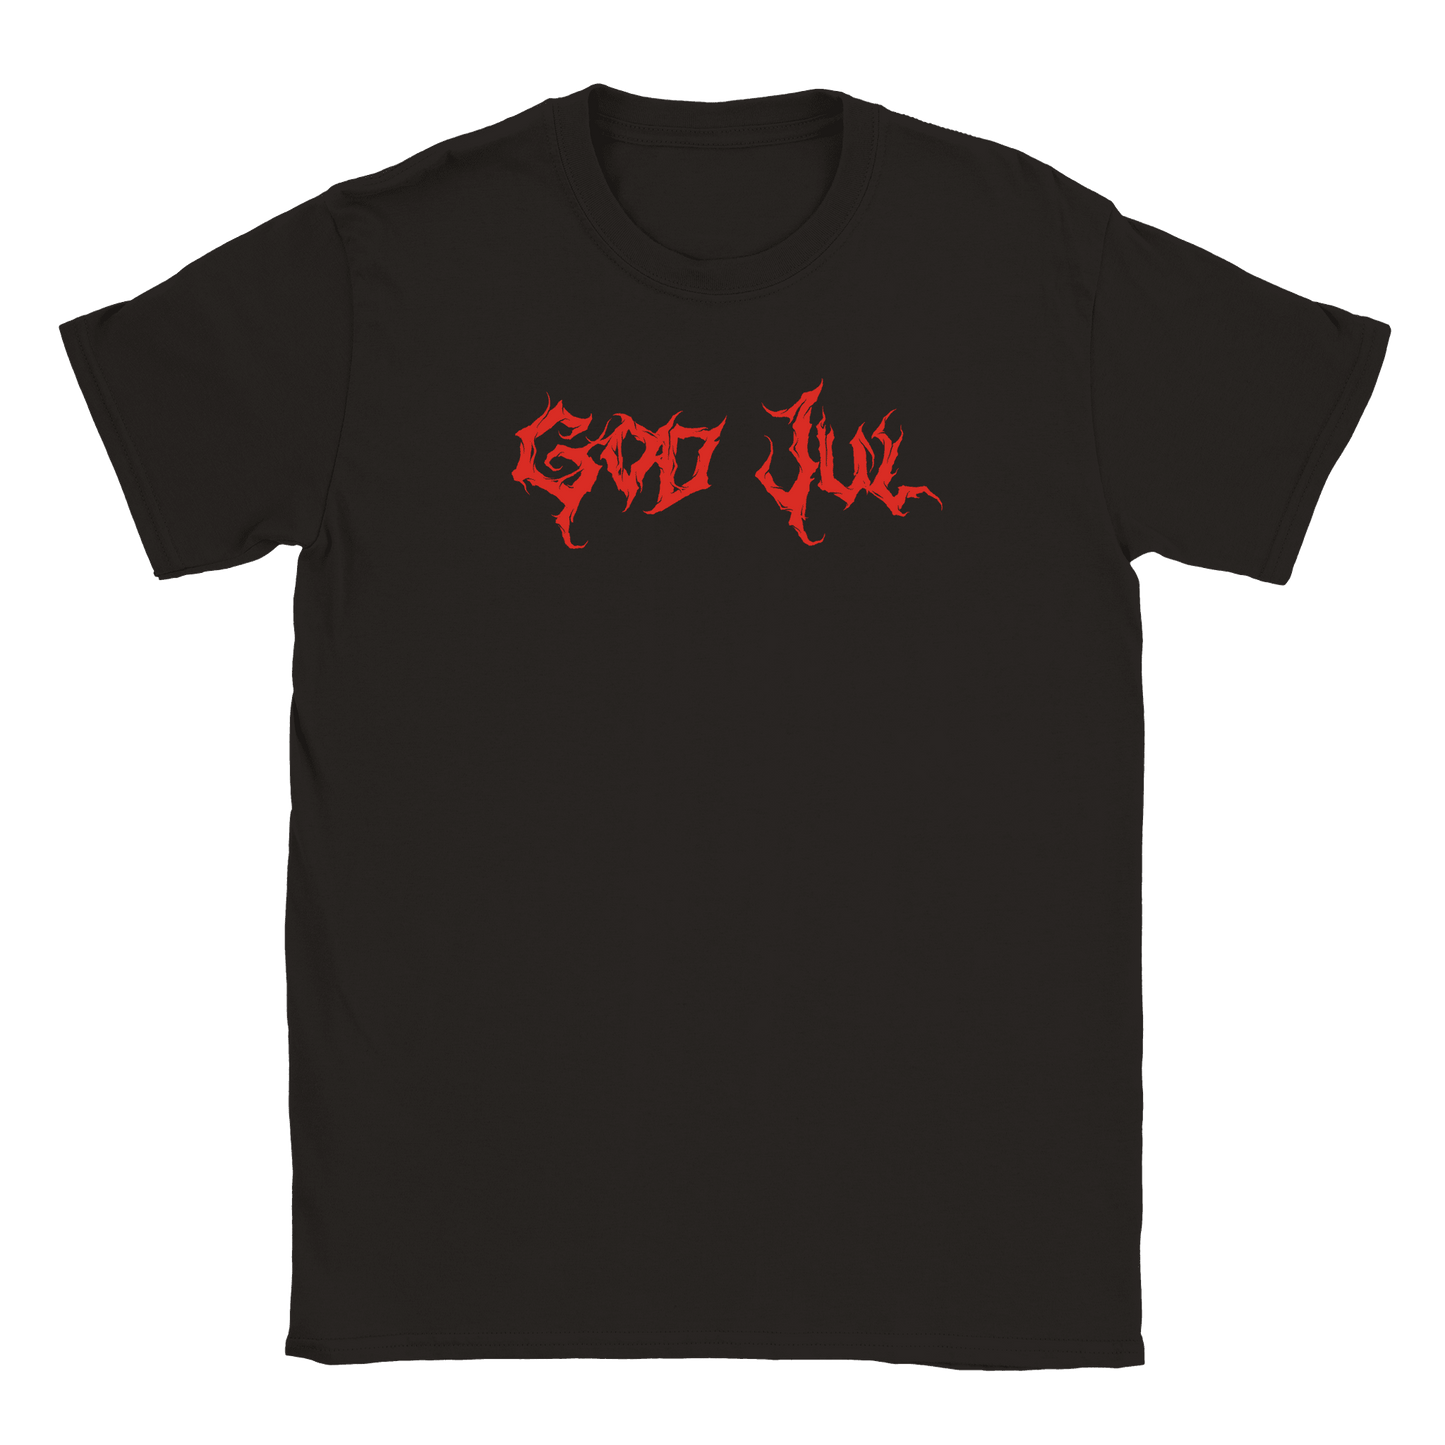 God Jul - T-shirt Svart